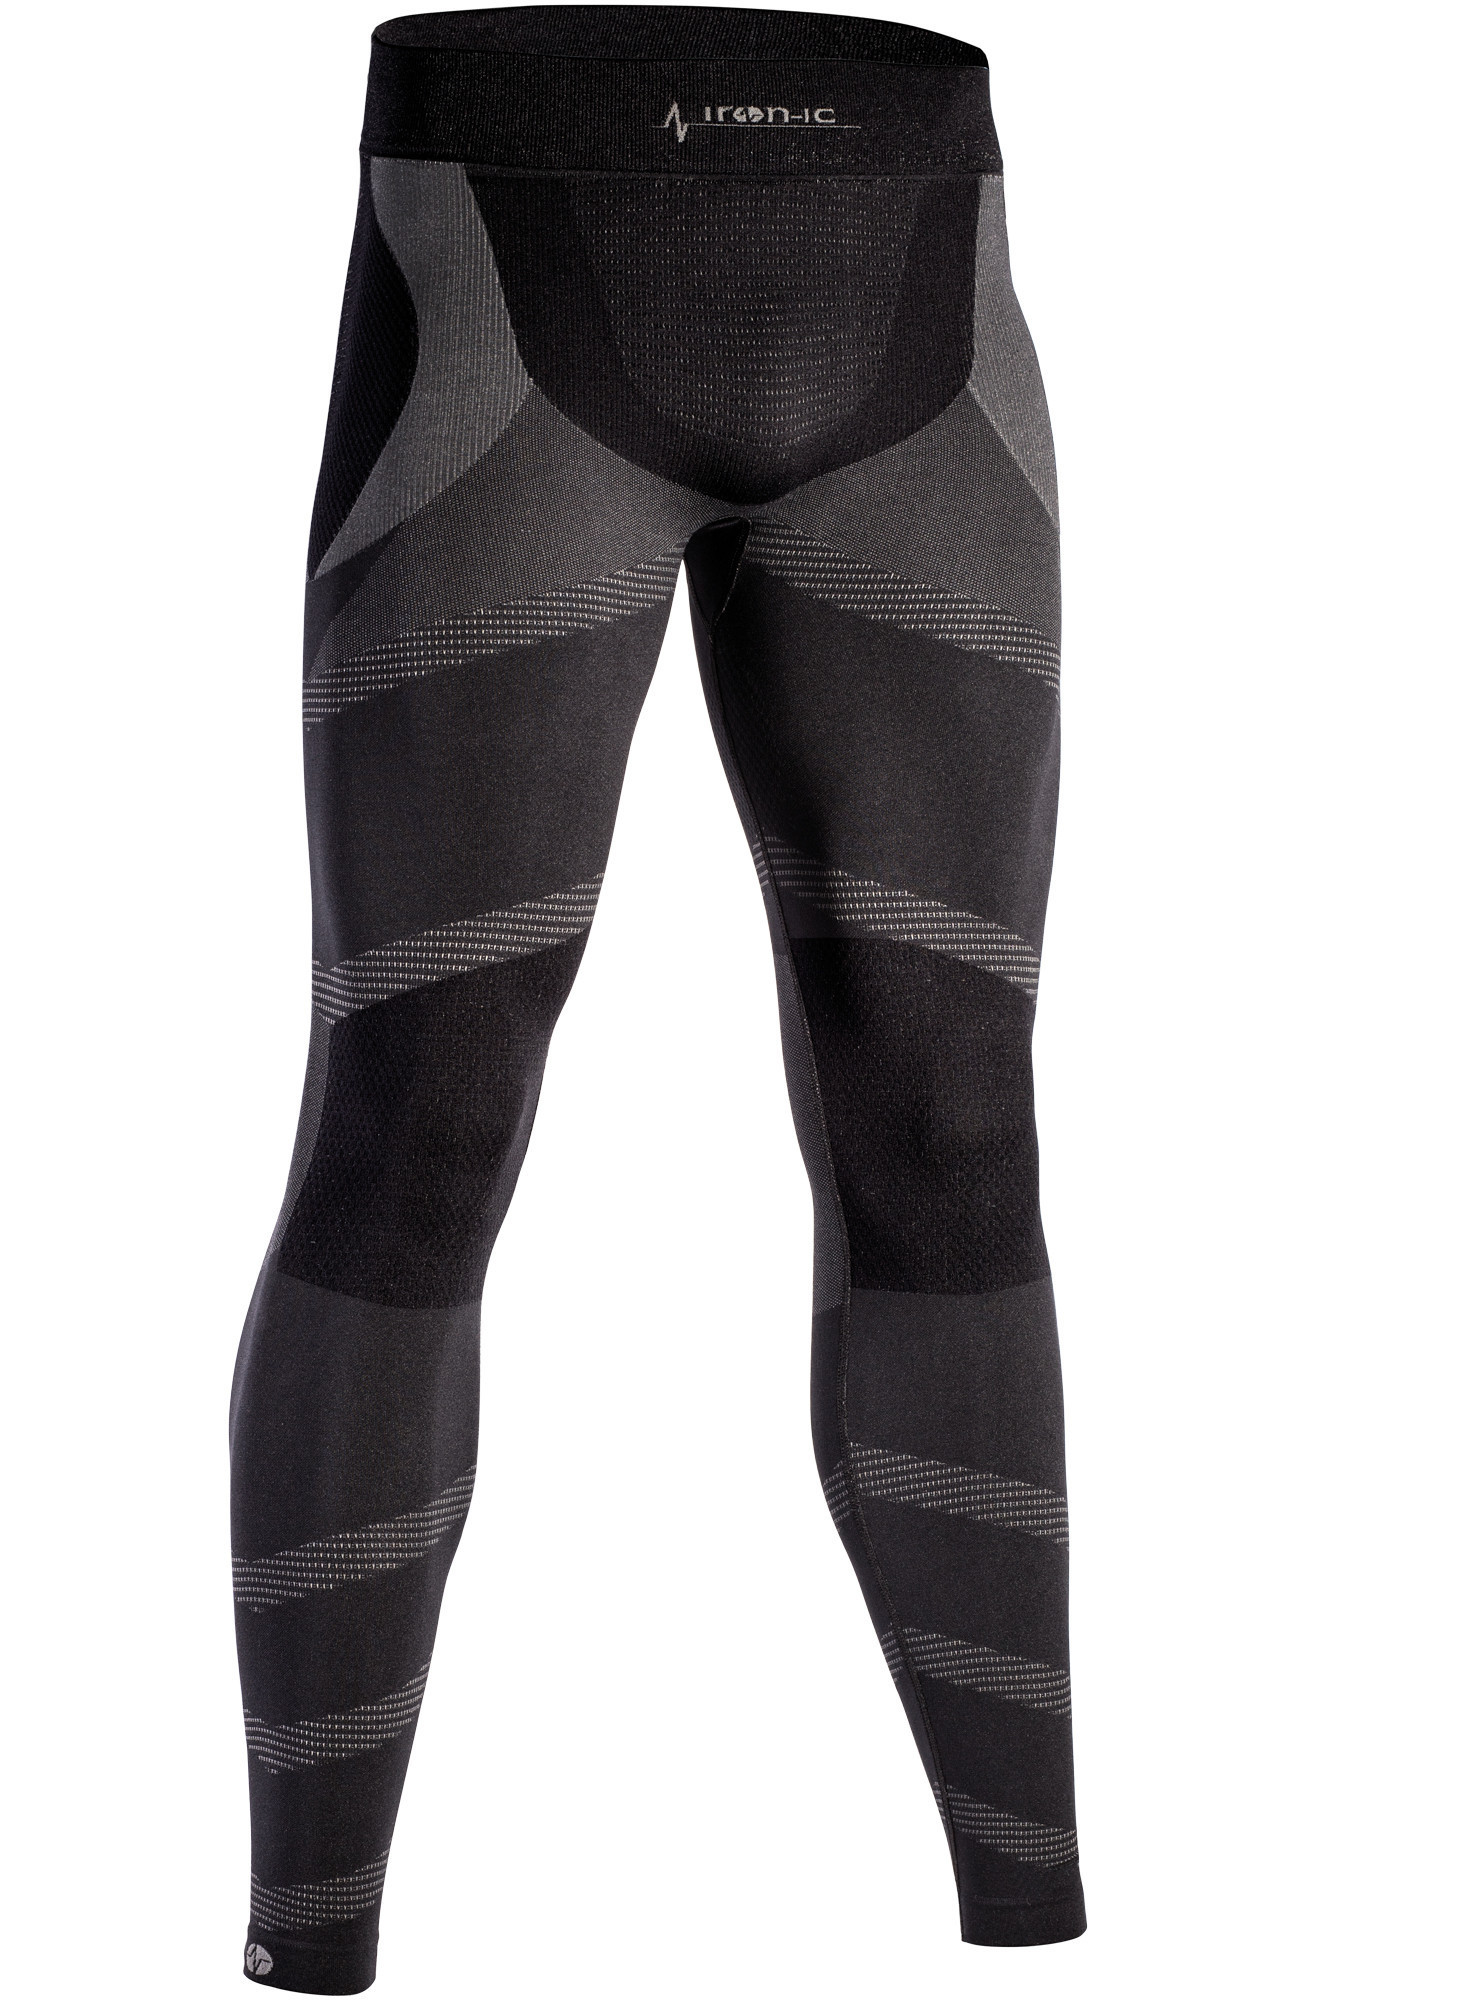 Dlouhé pánské funkční kalhoty IRON-IC - černo-šedá Barva: Černá, Velikost: S/M